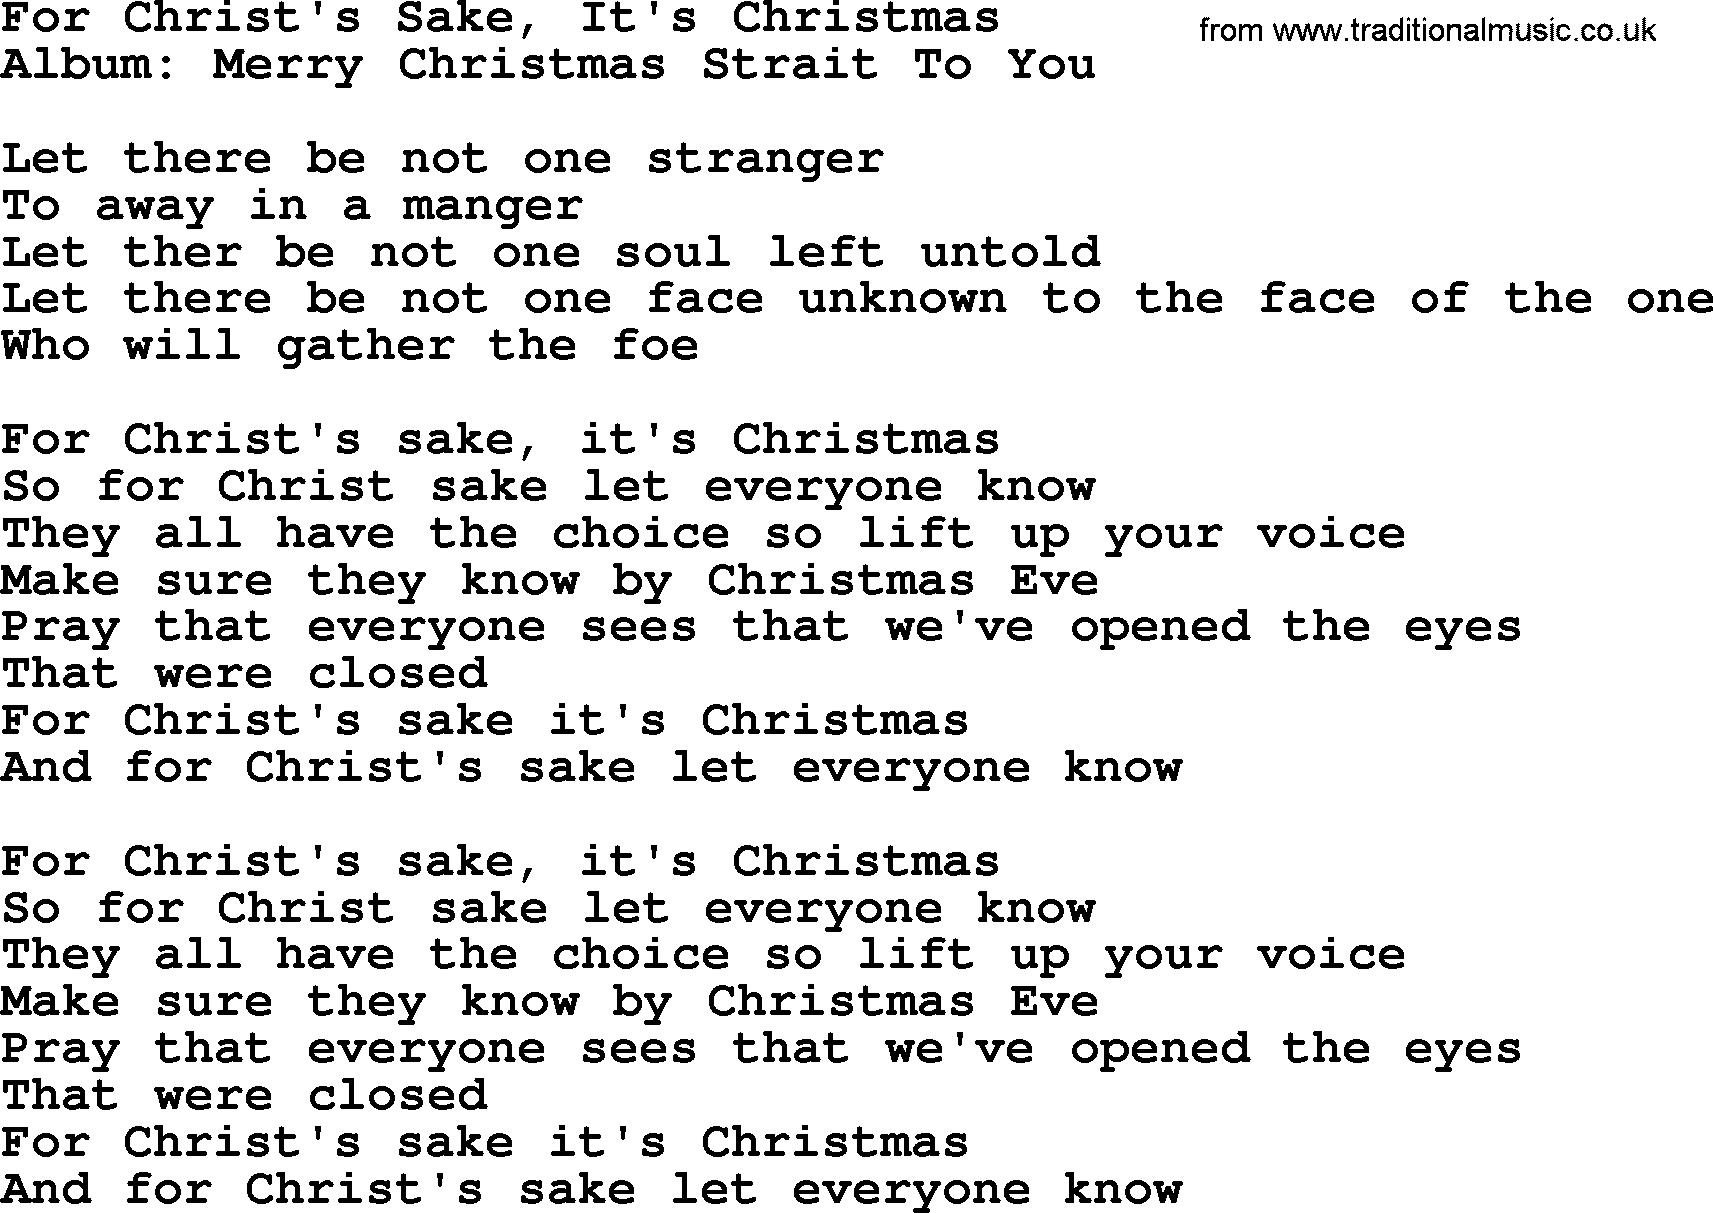 George Strait song: For Christ's Sake, It's Christmas, lyrics